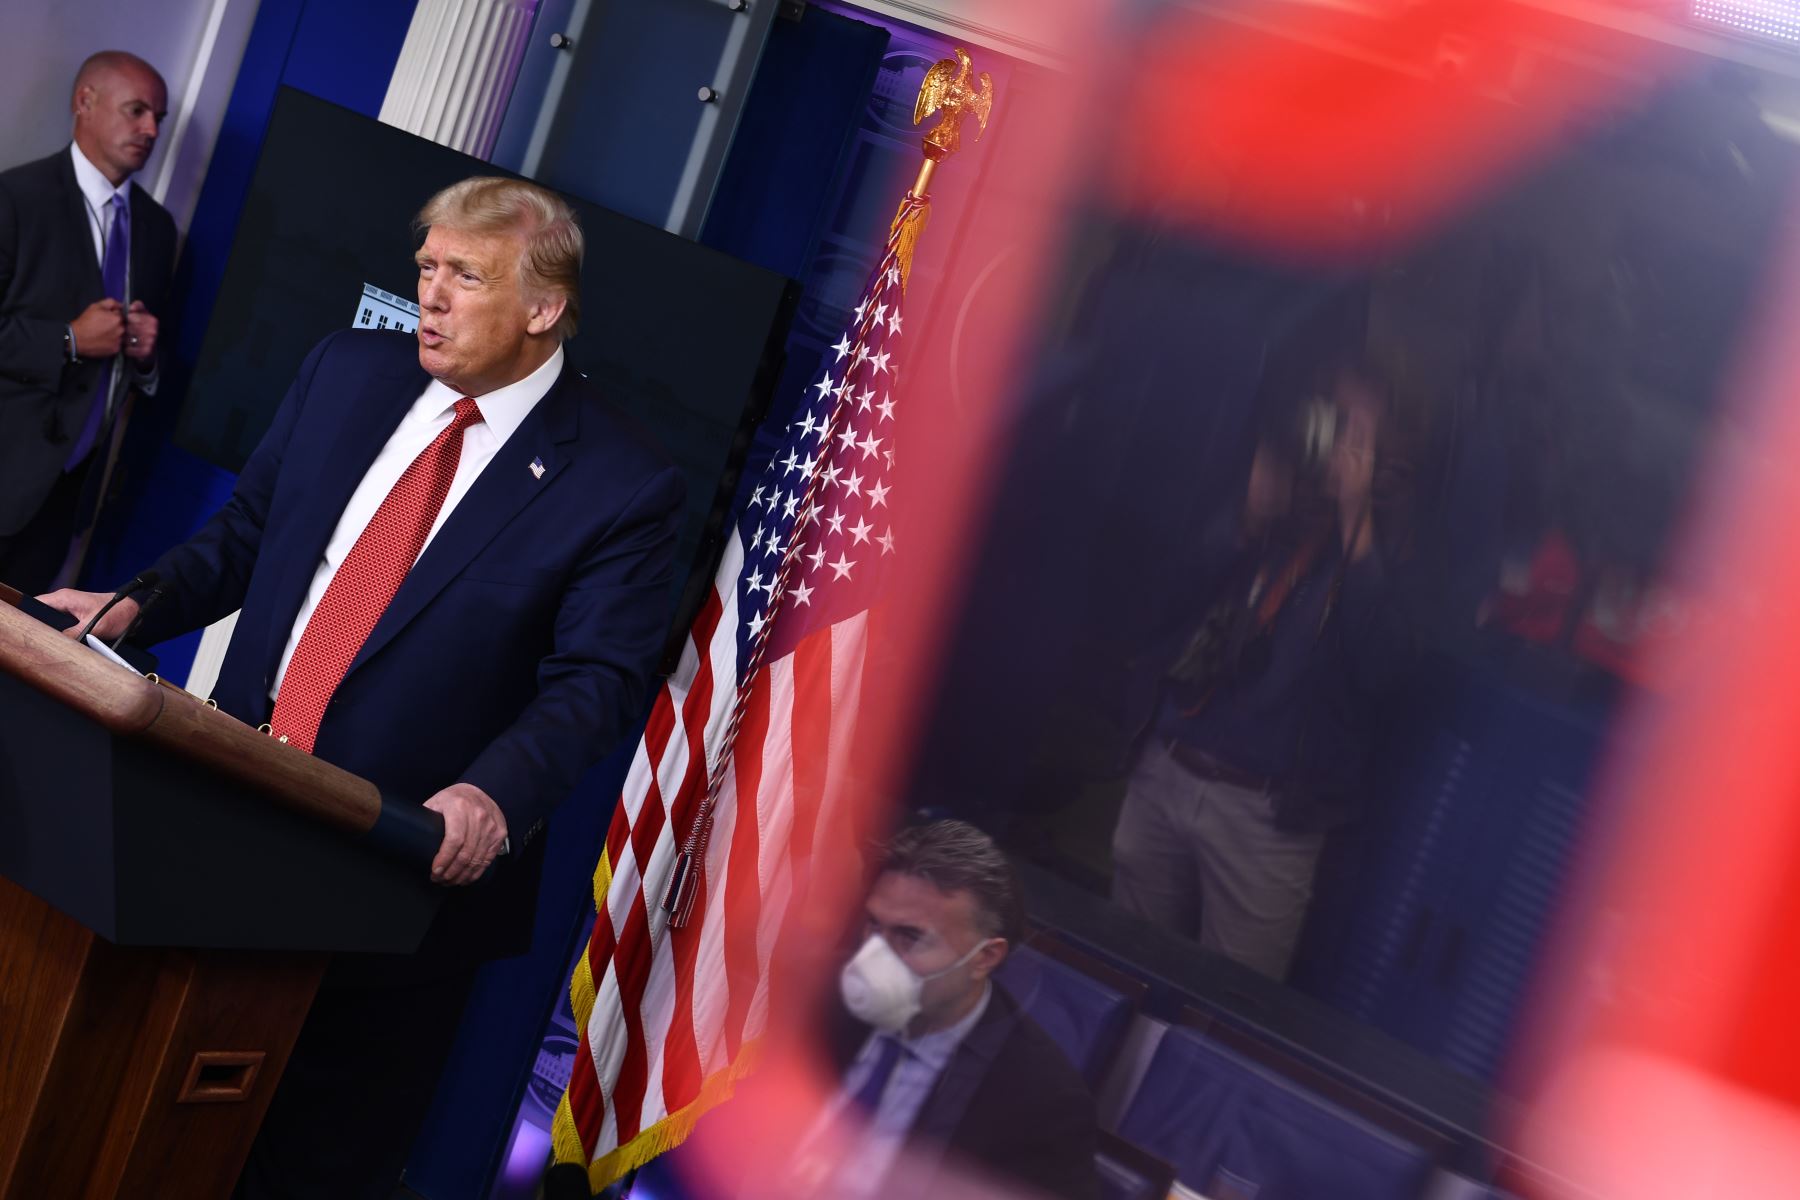 El presidente de Estados Unidos, Donald Trump, habla con la prensa en la Sala Brady de la Casa Blanca en Washington, DC. Los guardias del Servicio Secreto dispararon a una persona, que aparentemente estaba armada.
Foto: AFP